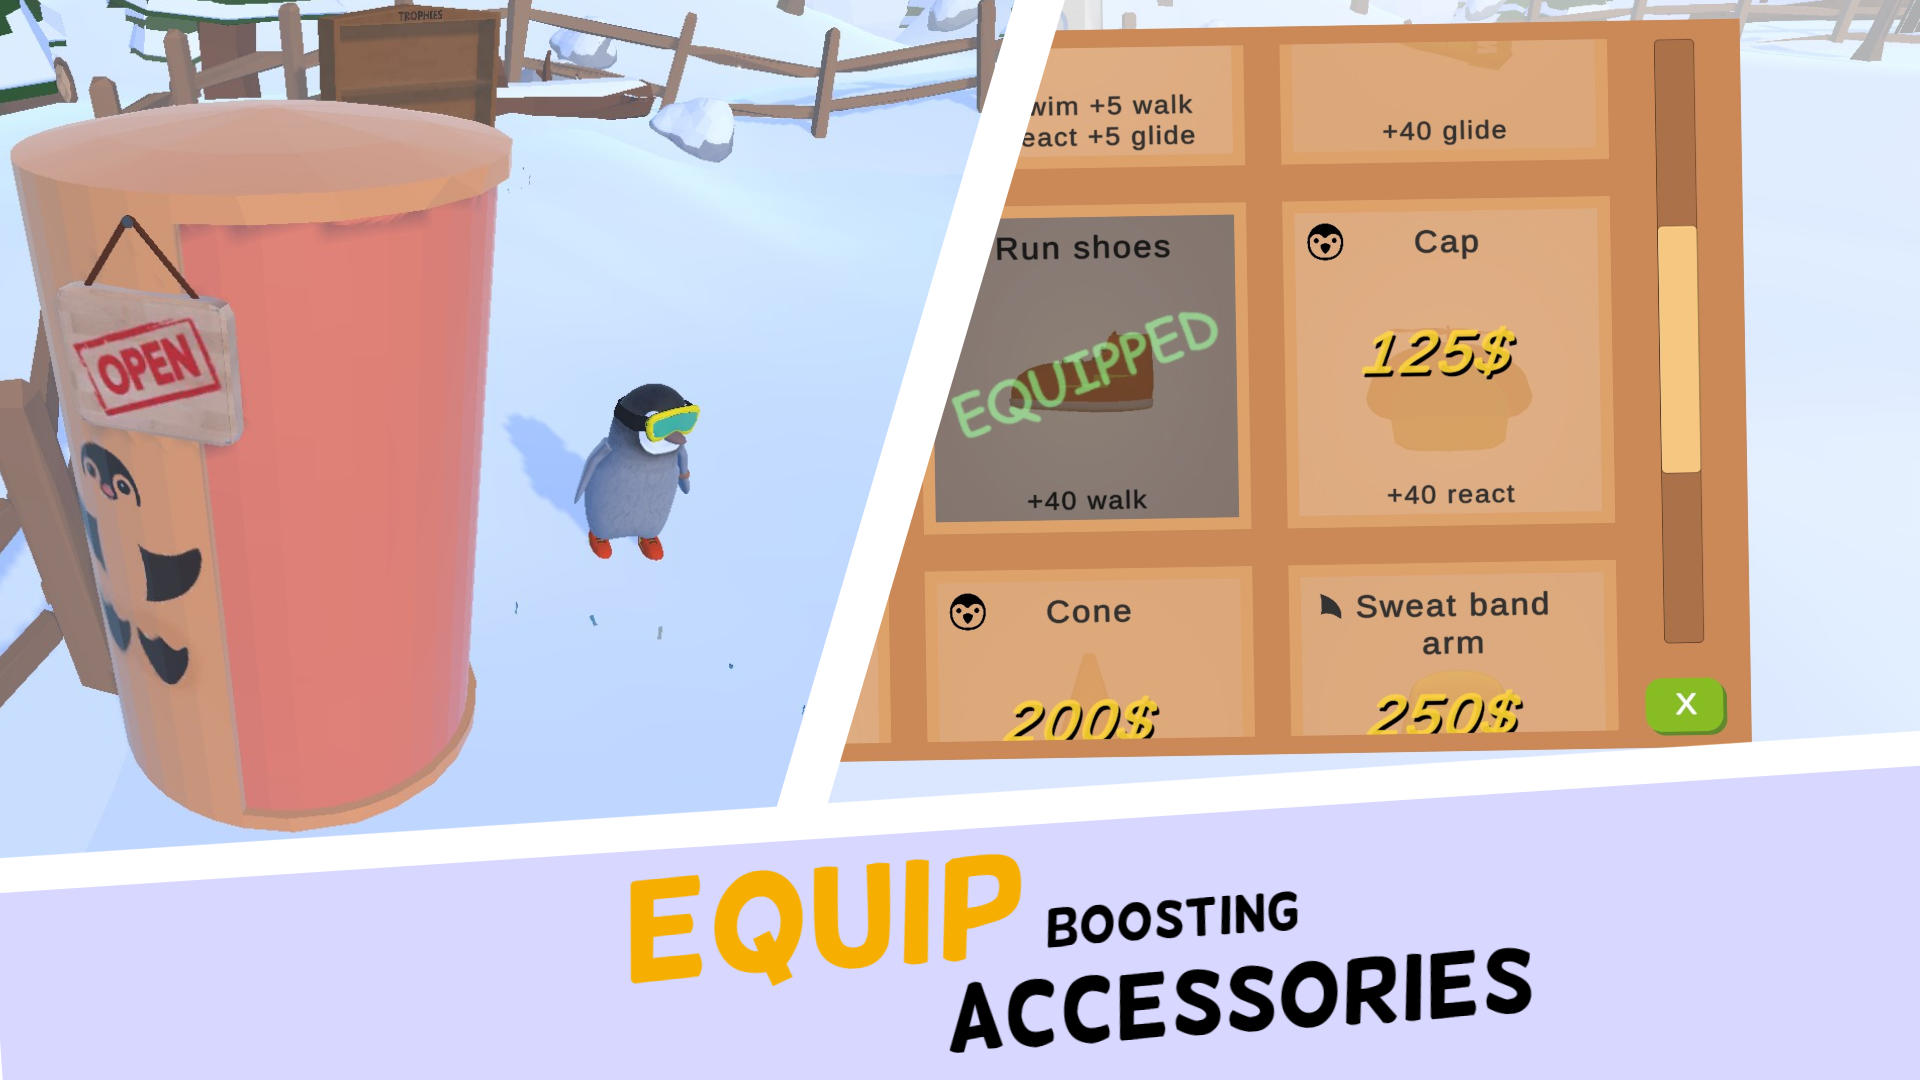 Aventuras geladas com o game Racing Penguin para iPad